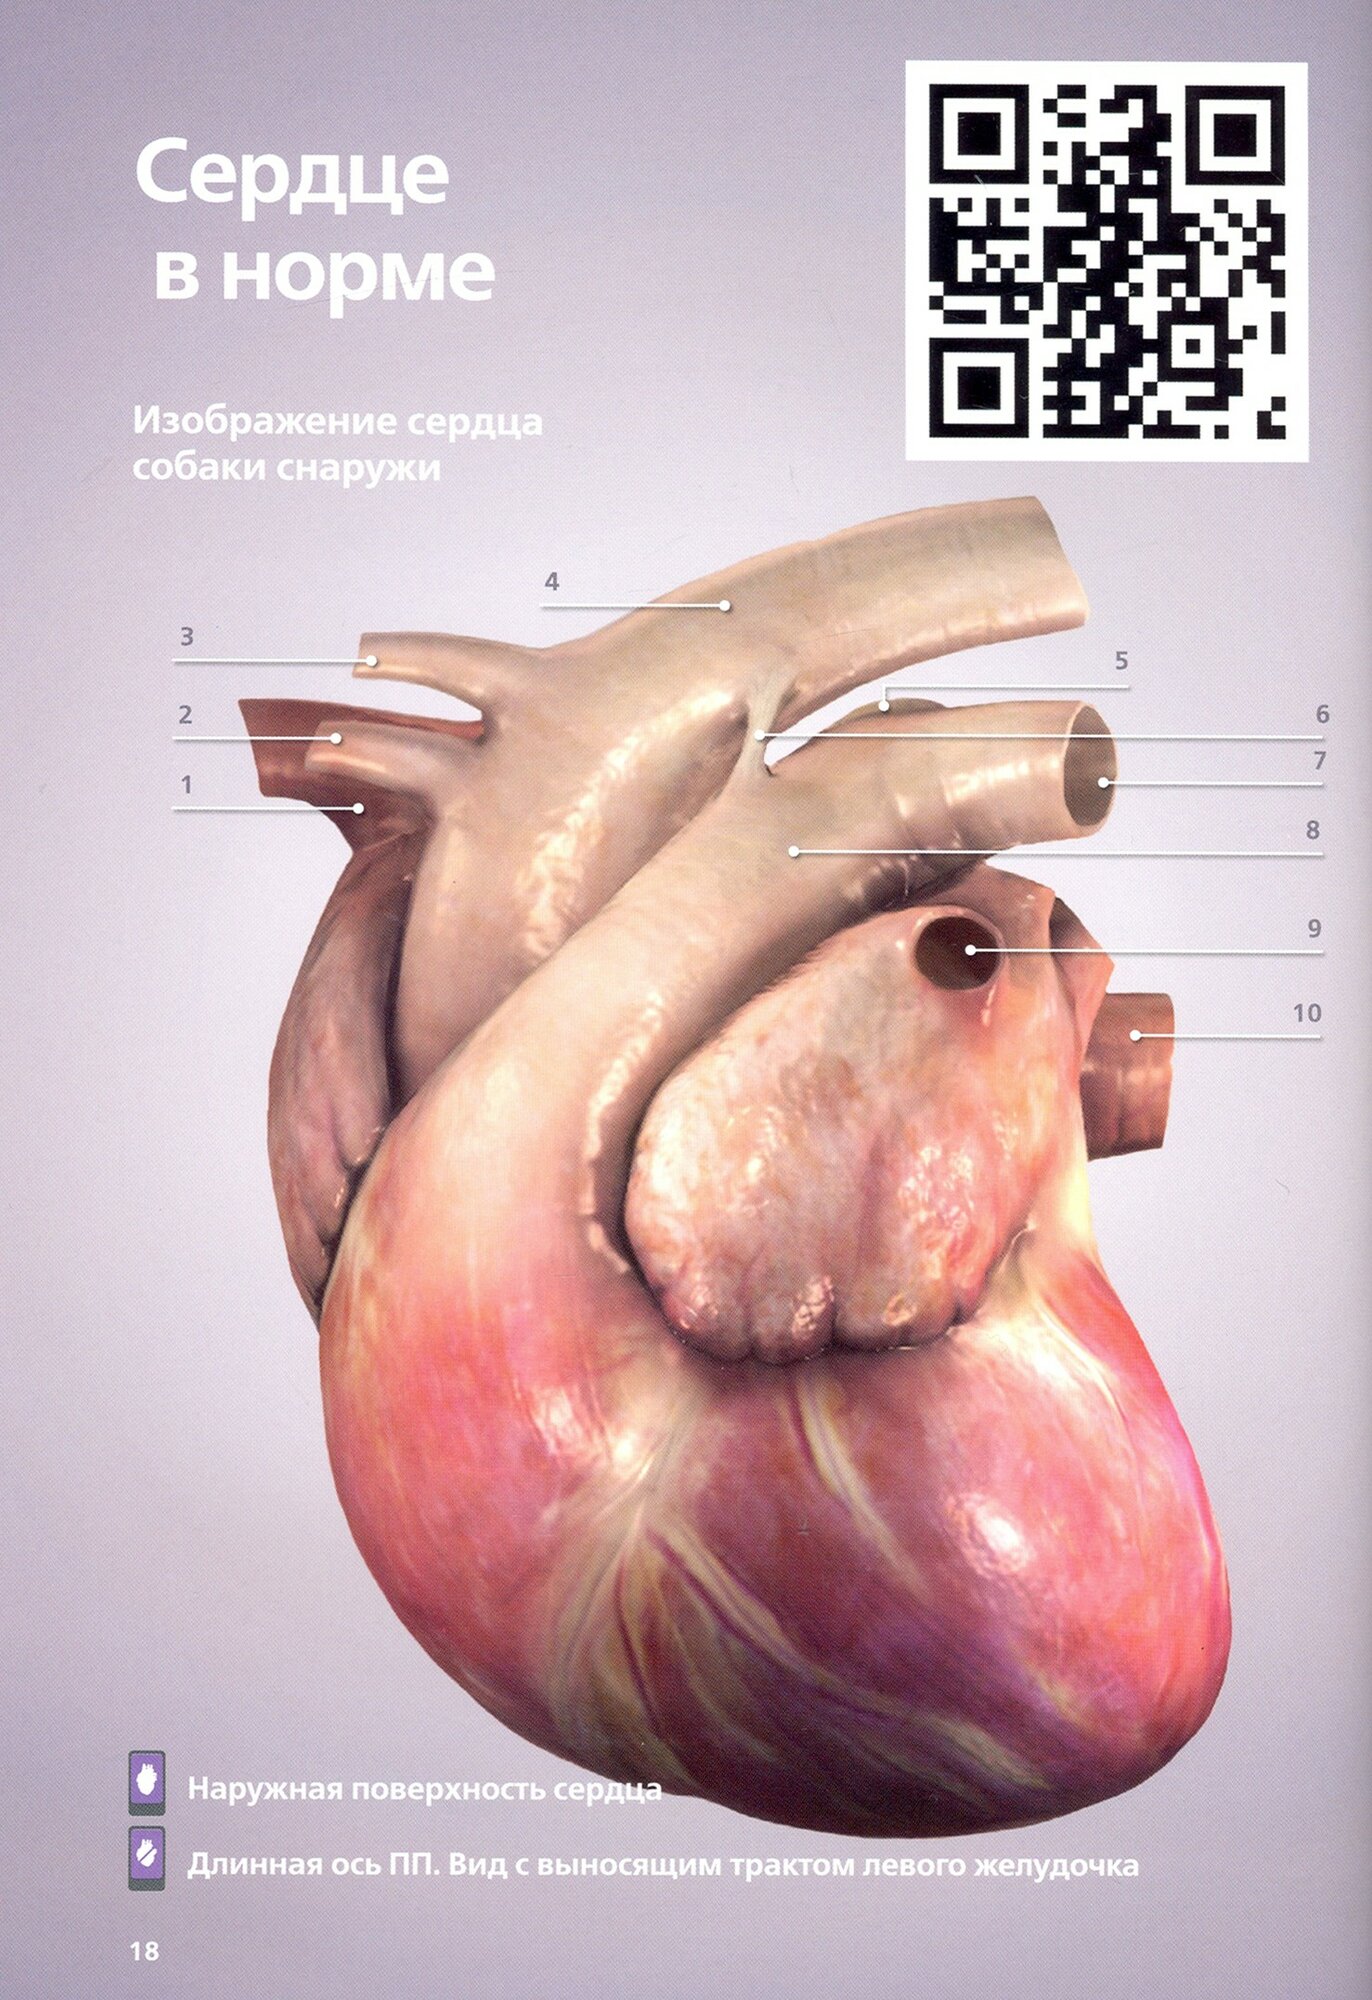 3D-кардиология мелких домашних животных. Патофизиологические основы и диагностические ключи - фото №2